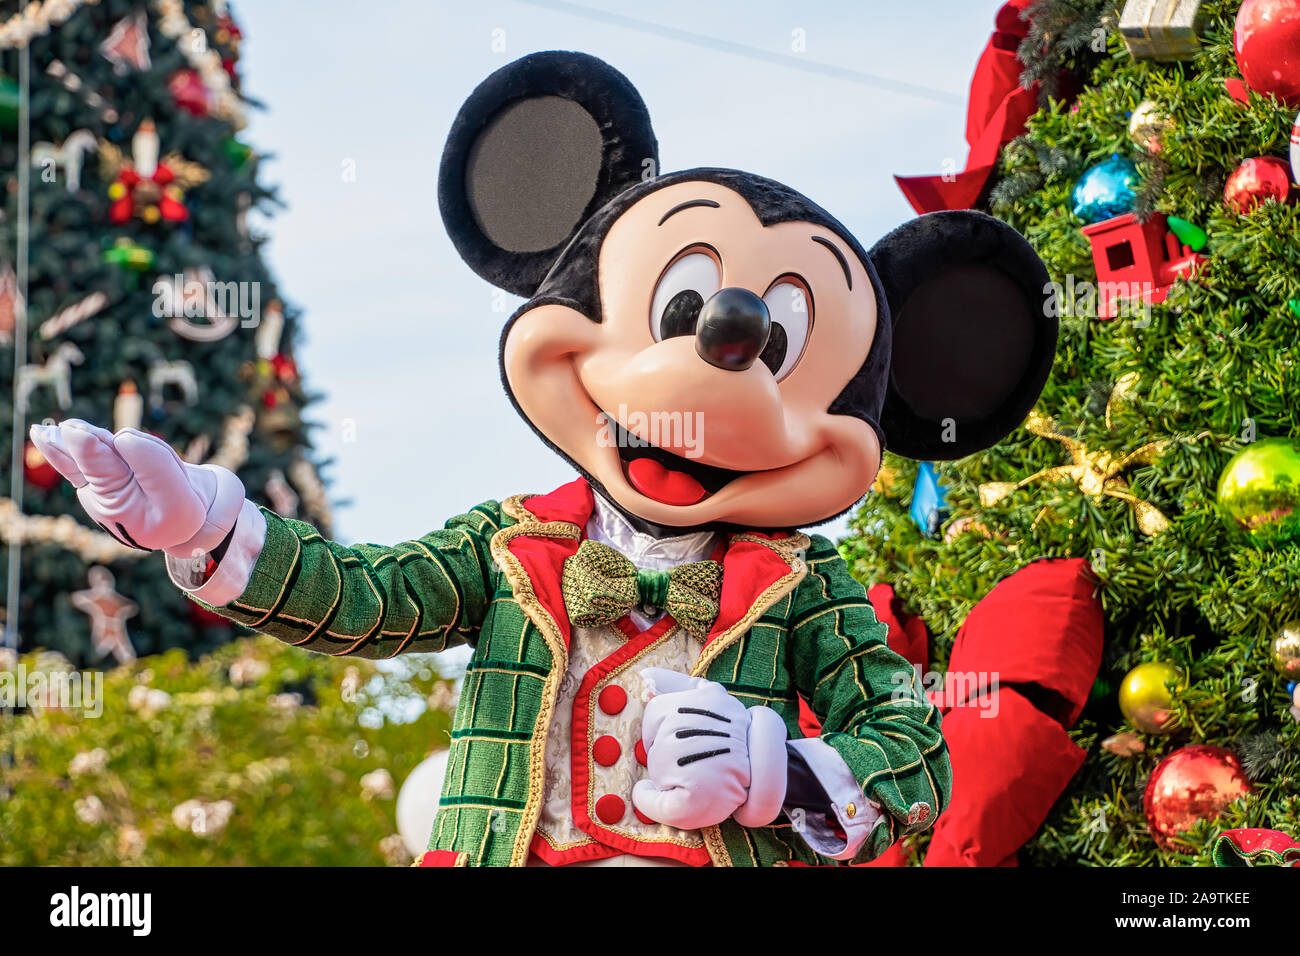 Mickey Mouse in Weihnachten Outfits in der Weihnachtszeit Parade